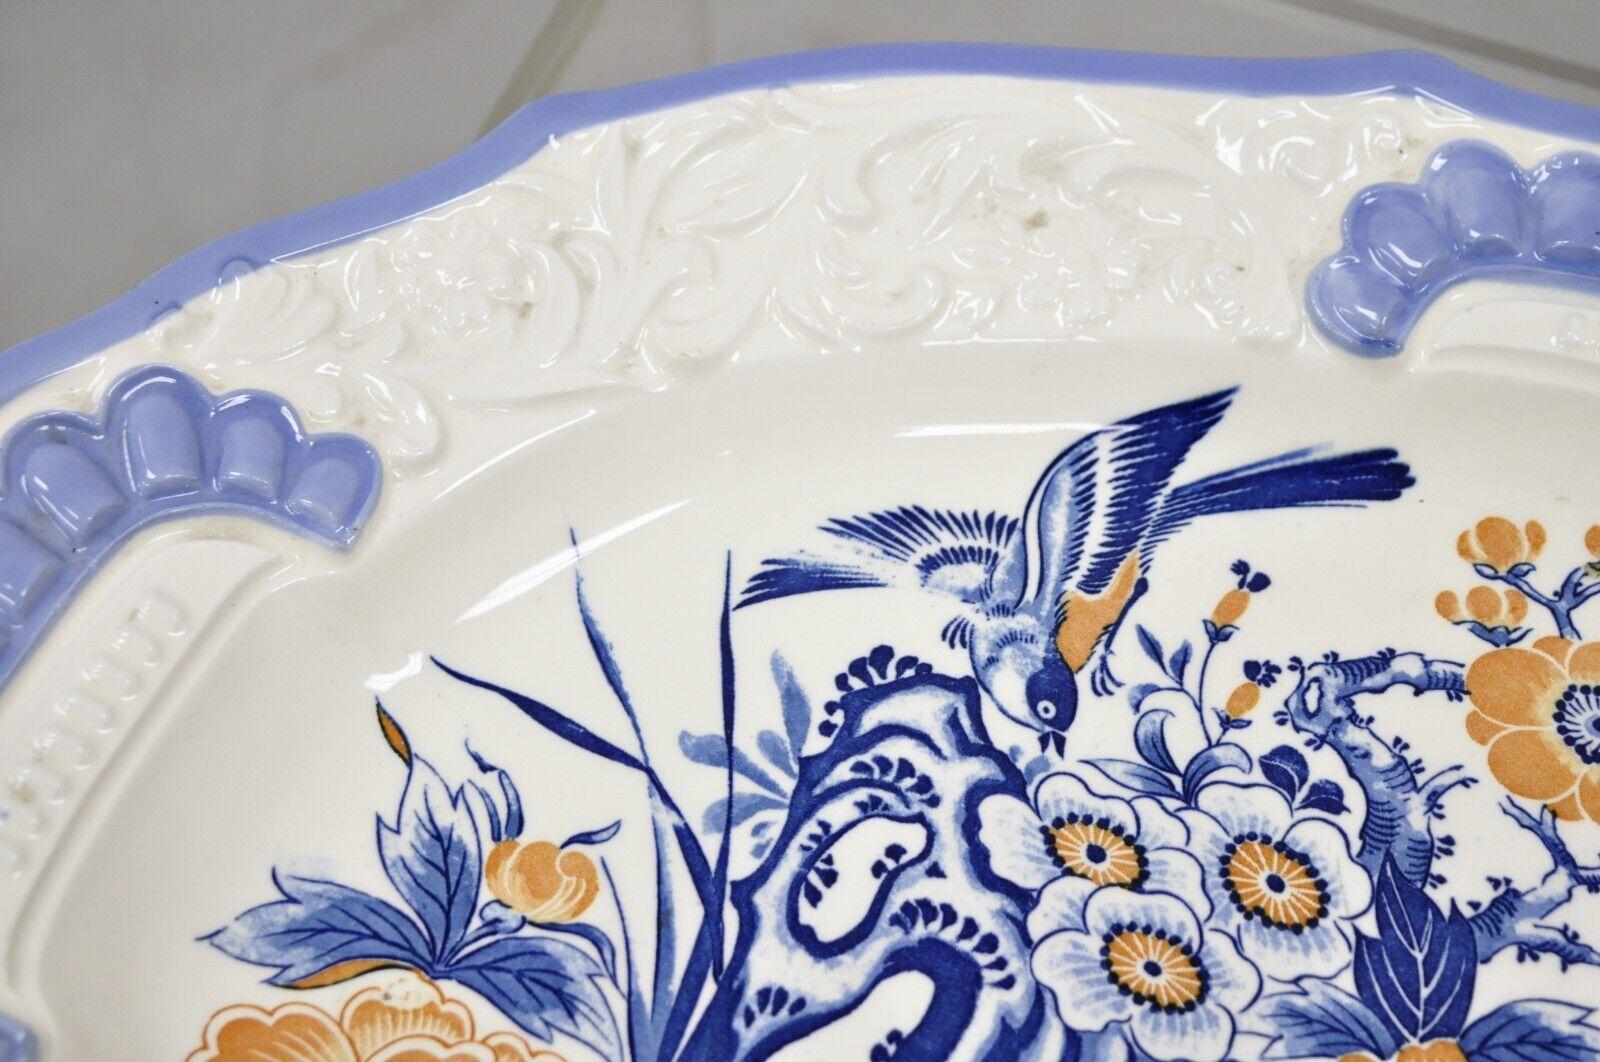 20th Century Chikusa Yokkaichi Japan Blue White Ceramic Chinese Bird Platter Dish Plate